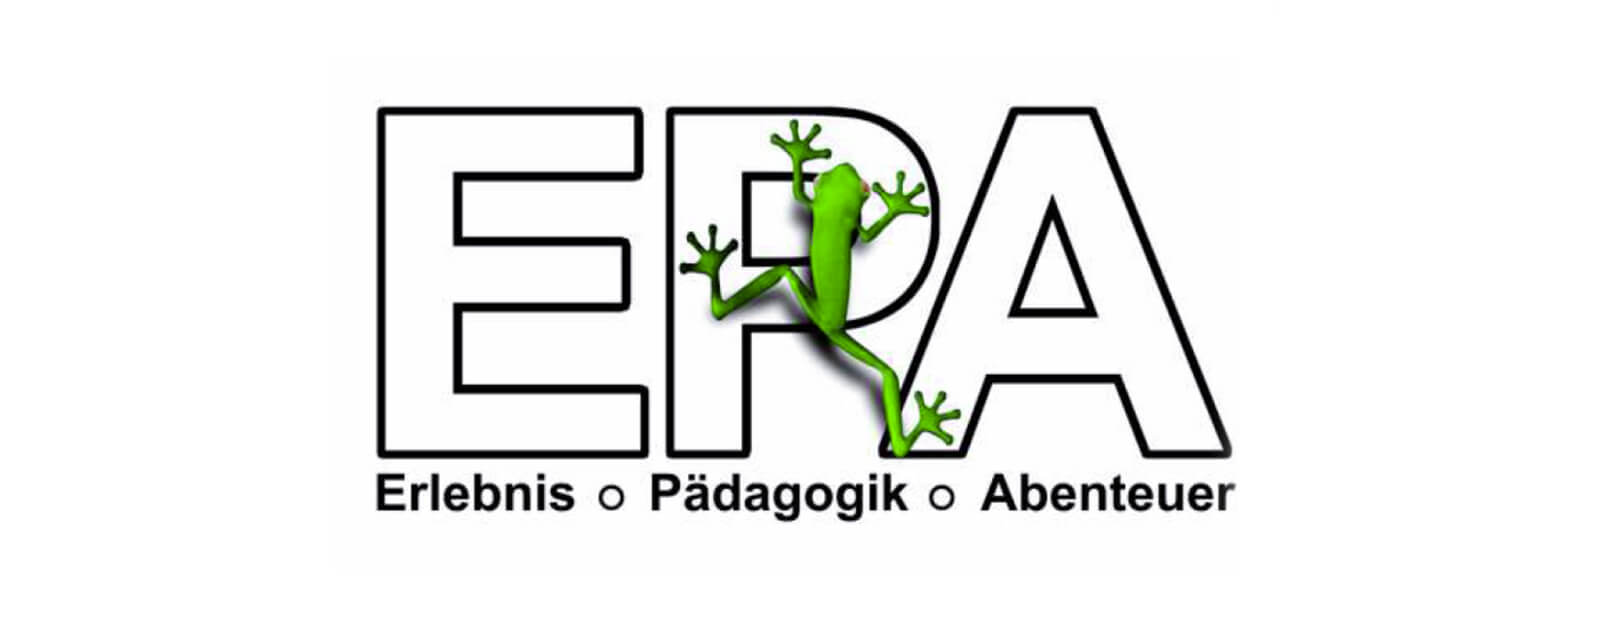 Logo für EPA - Erlebnis, Pädagogik und Abenteuer